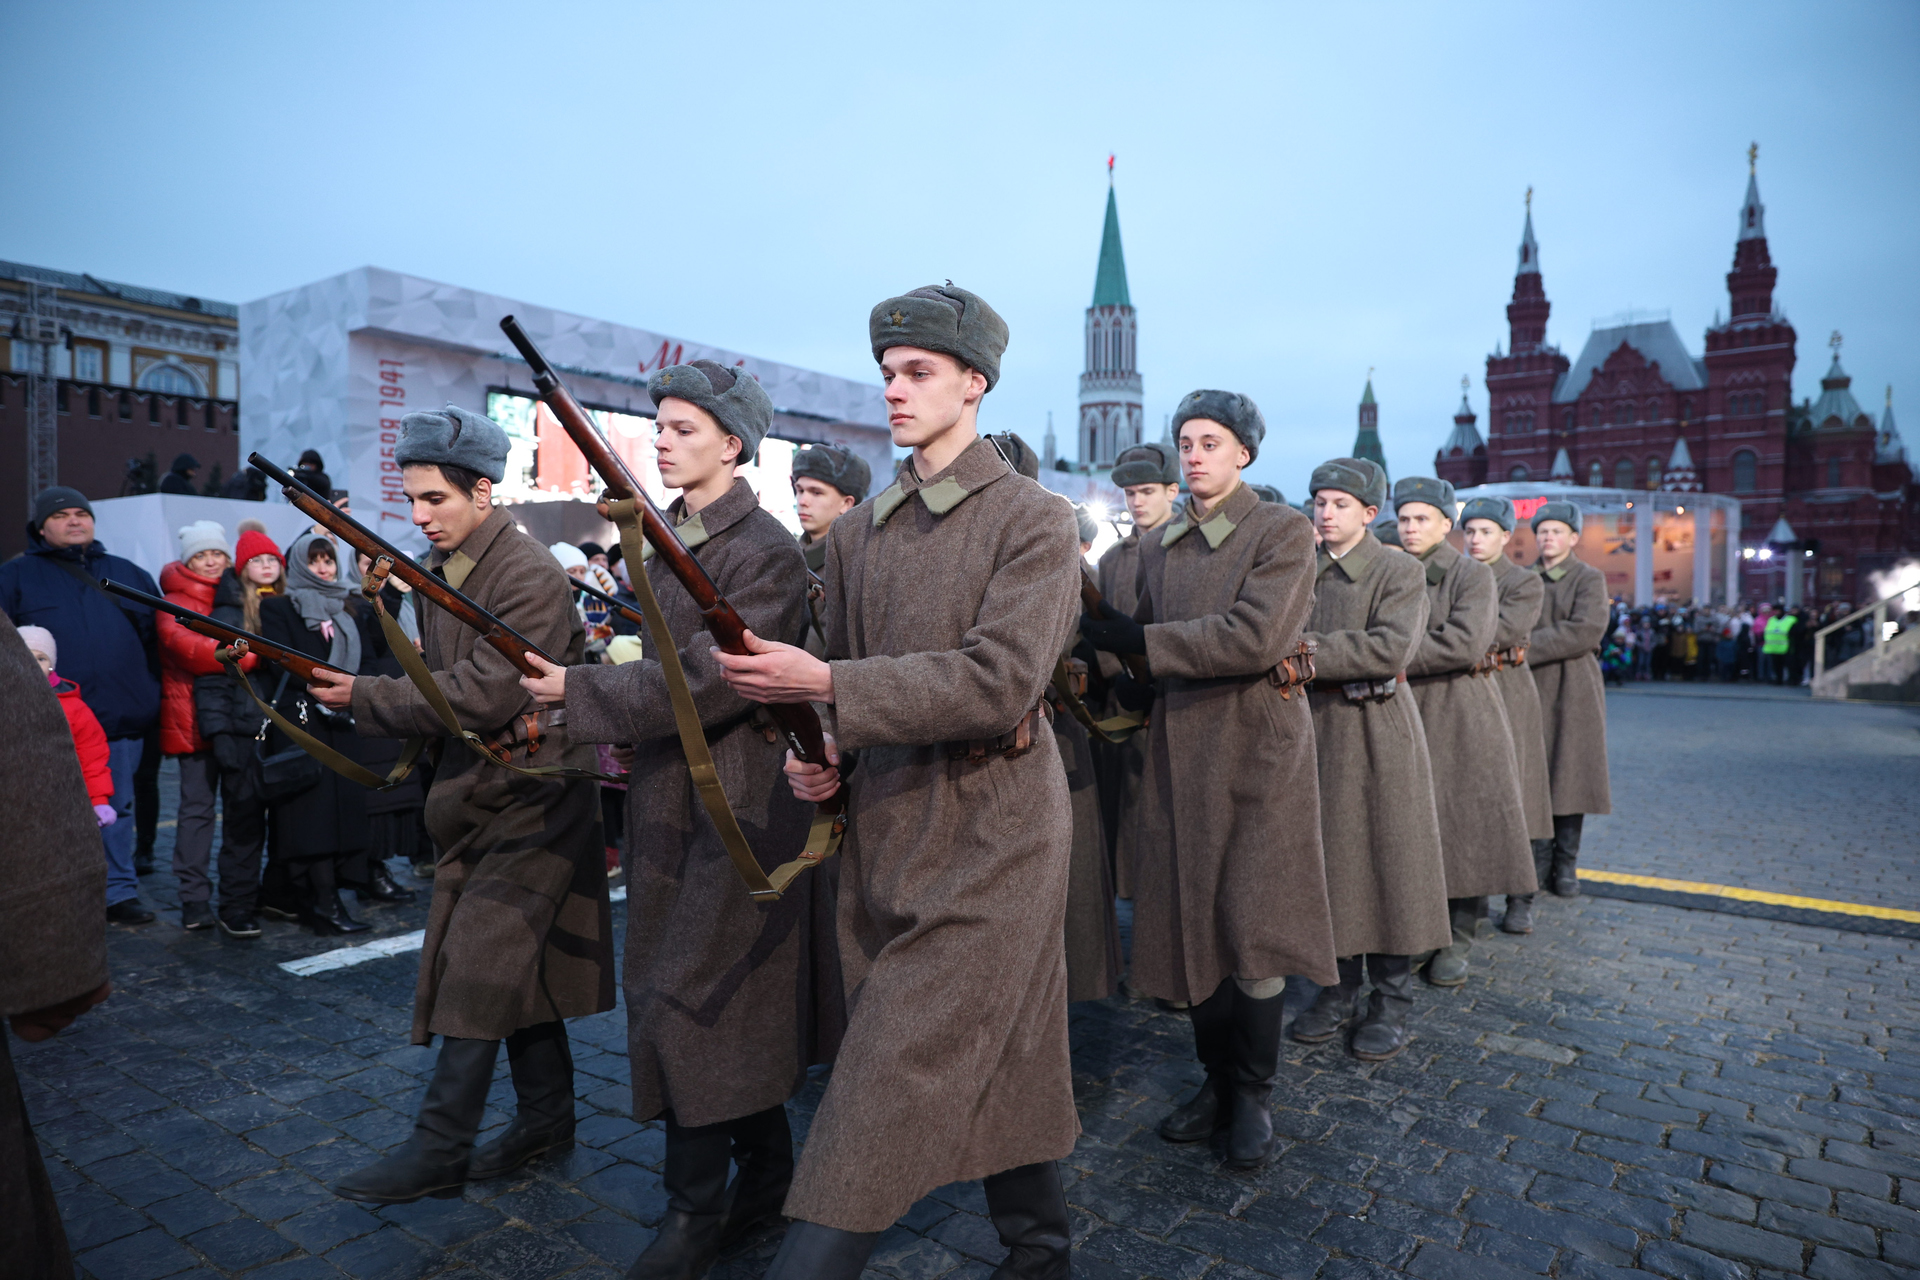 Где проходил парад в 1941 году. Парад 7 ноября 1941 года. Парад 7 ноября 1941 года в Москве на красной площади. Парад на красной площади в Москве 7 ноября 1941 года картина. Парад на красной площади 7 ноября 1941 года картина.